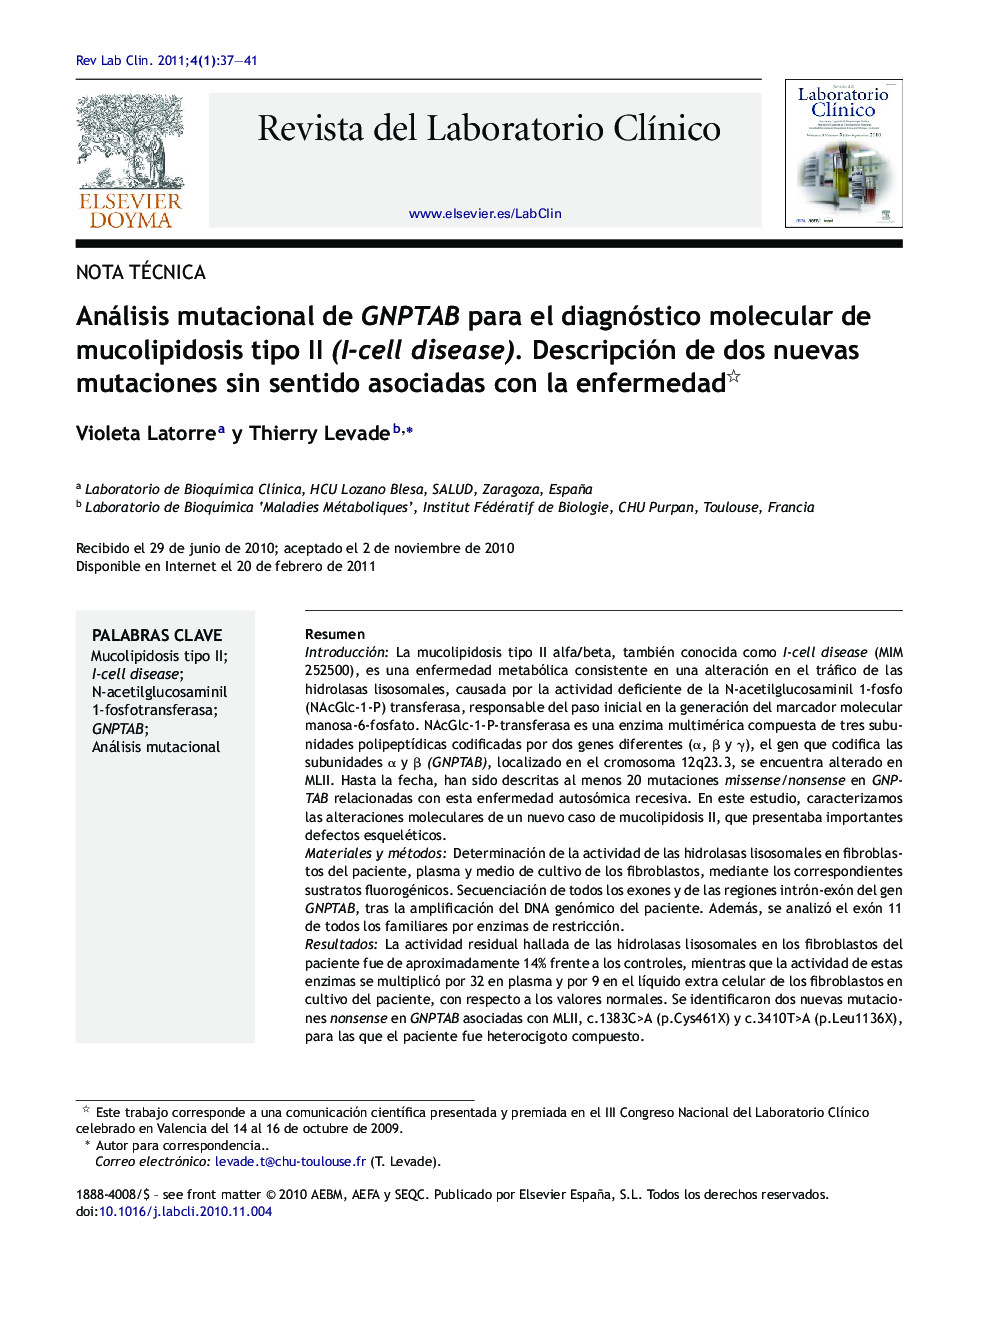 Análisis mutacional de GNPTAB para el diagnóstico molecular de mucolipidosis tipo II (I-cell disease). Descripción de dos nuevas mutaciones sin sentido asociadas con la enfermedad